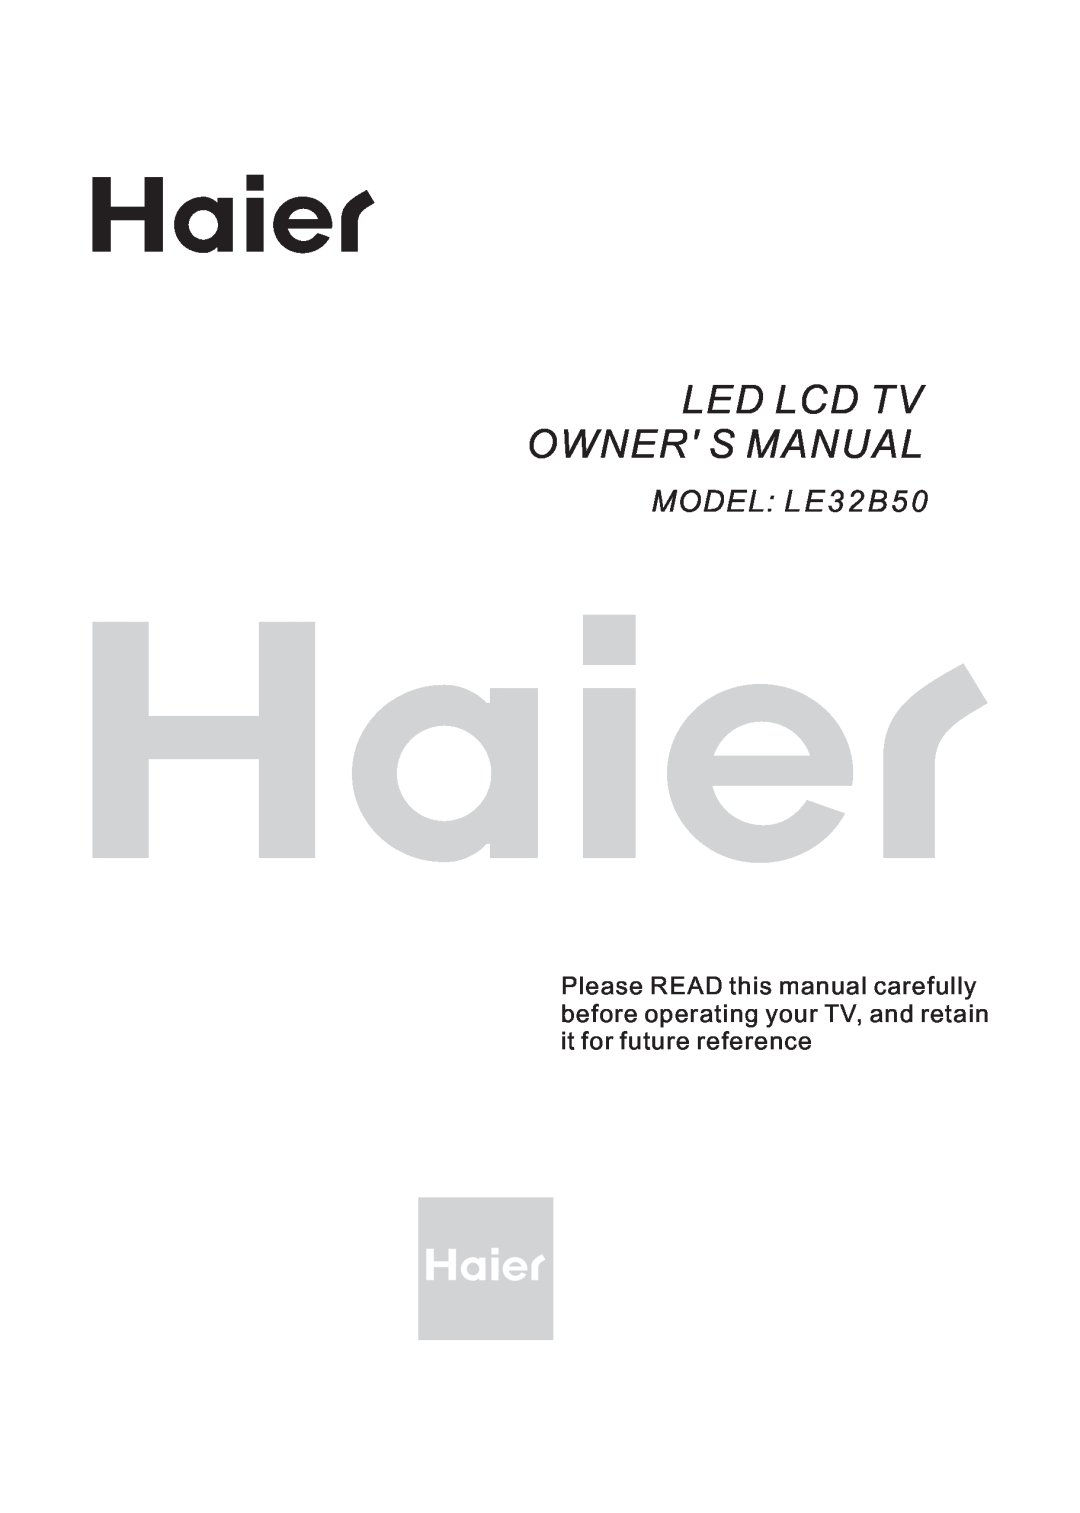 Haier LE32B50, LED LCD TV owner manual Led Lcd Tv Owner S Manual, MODEL L E 3 2 B 5 